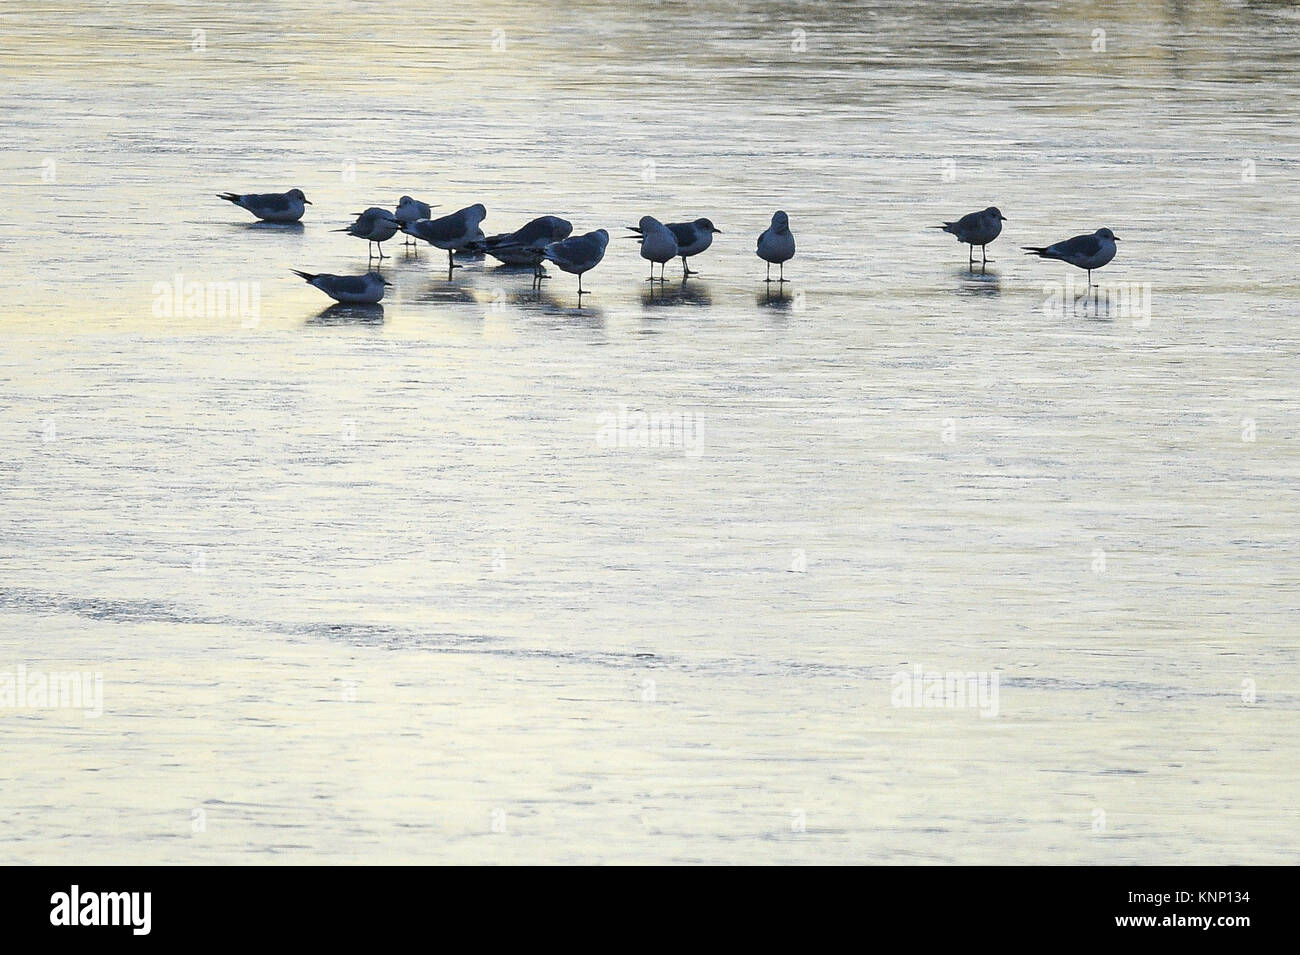 Gli uccelli a piedi sul ghiaccio a Chew Valley Lake, Somerset, come la Gran Bretagna ha avuto la sua notte più freddi dell'anno con vaste aree del paese che cadono al di sotto di congelamento - con ai -13 °C (8.6F) registrate nello Shropshire. Foto Stock